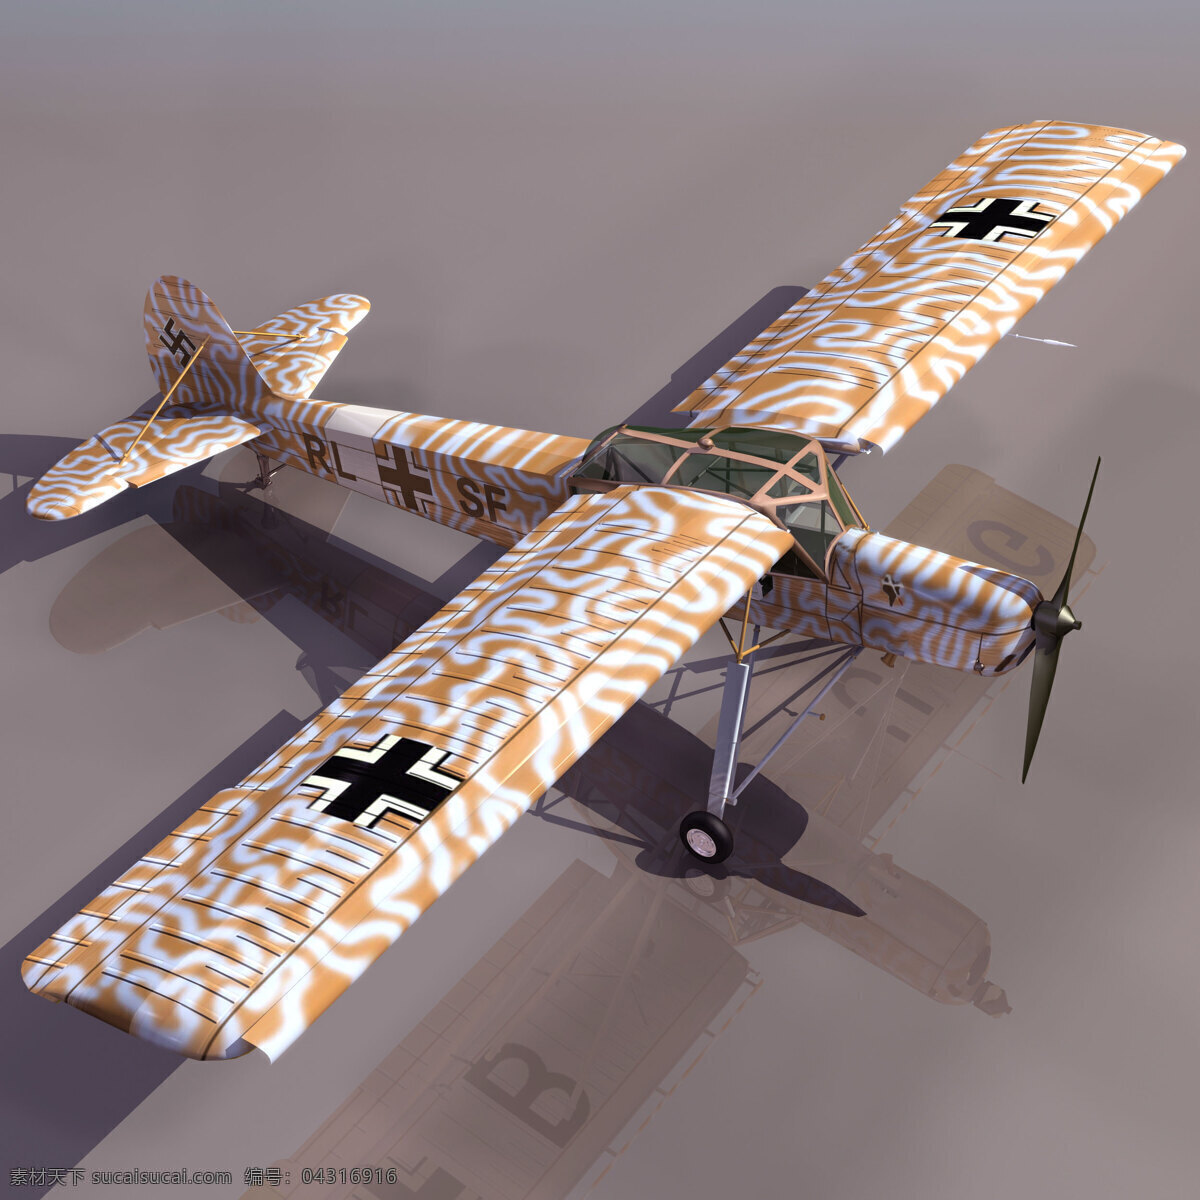 花纹 3d 飞机模型 3d飞机模型 3d设计模型 max 源文件 模板下载 机场设备模型 3d模型素材 其他3d模型